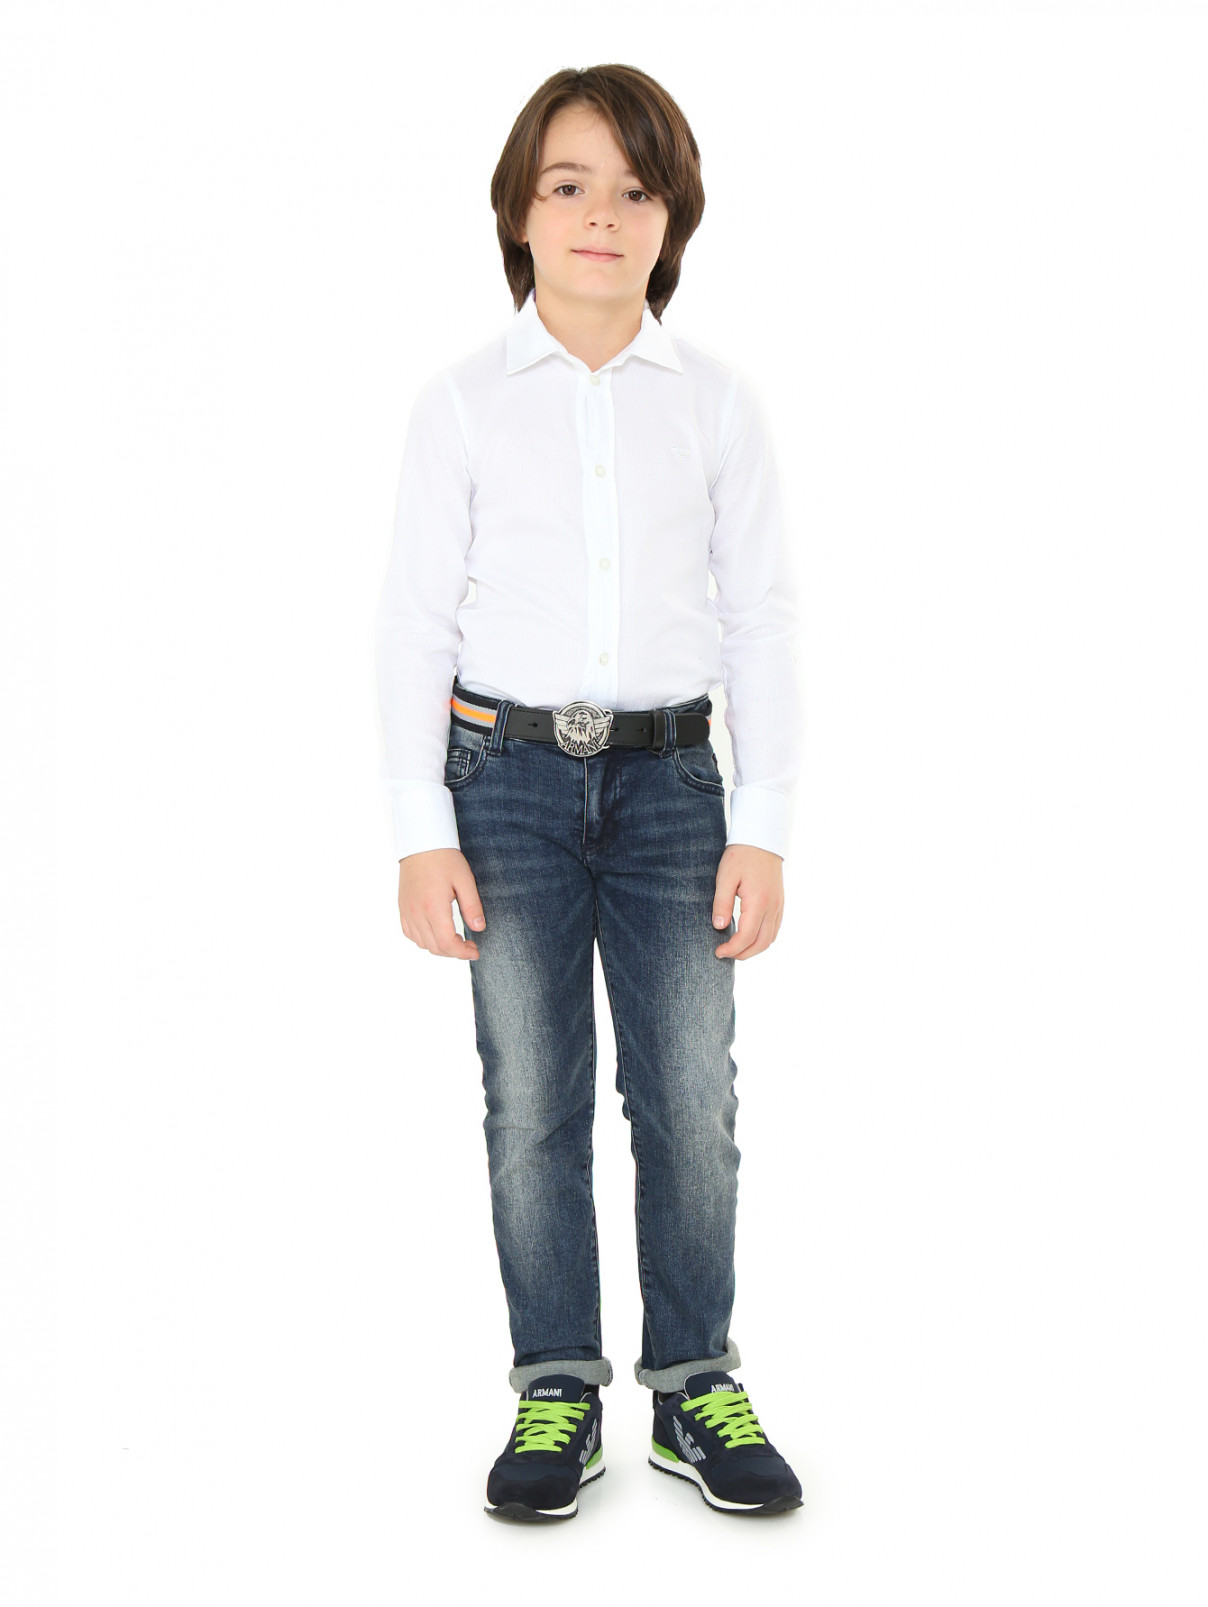 Ремень из кожи и текстиля с узором "полоска" Armani Junior  –  Модель Общий вид  – Цвет:  Узор